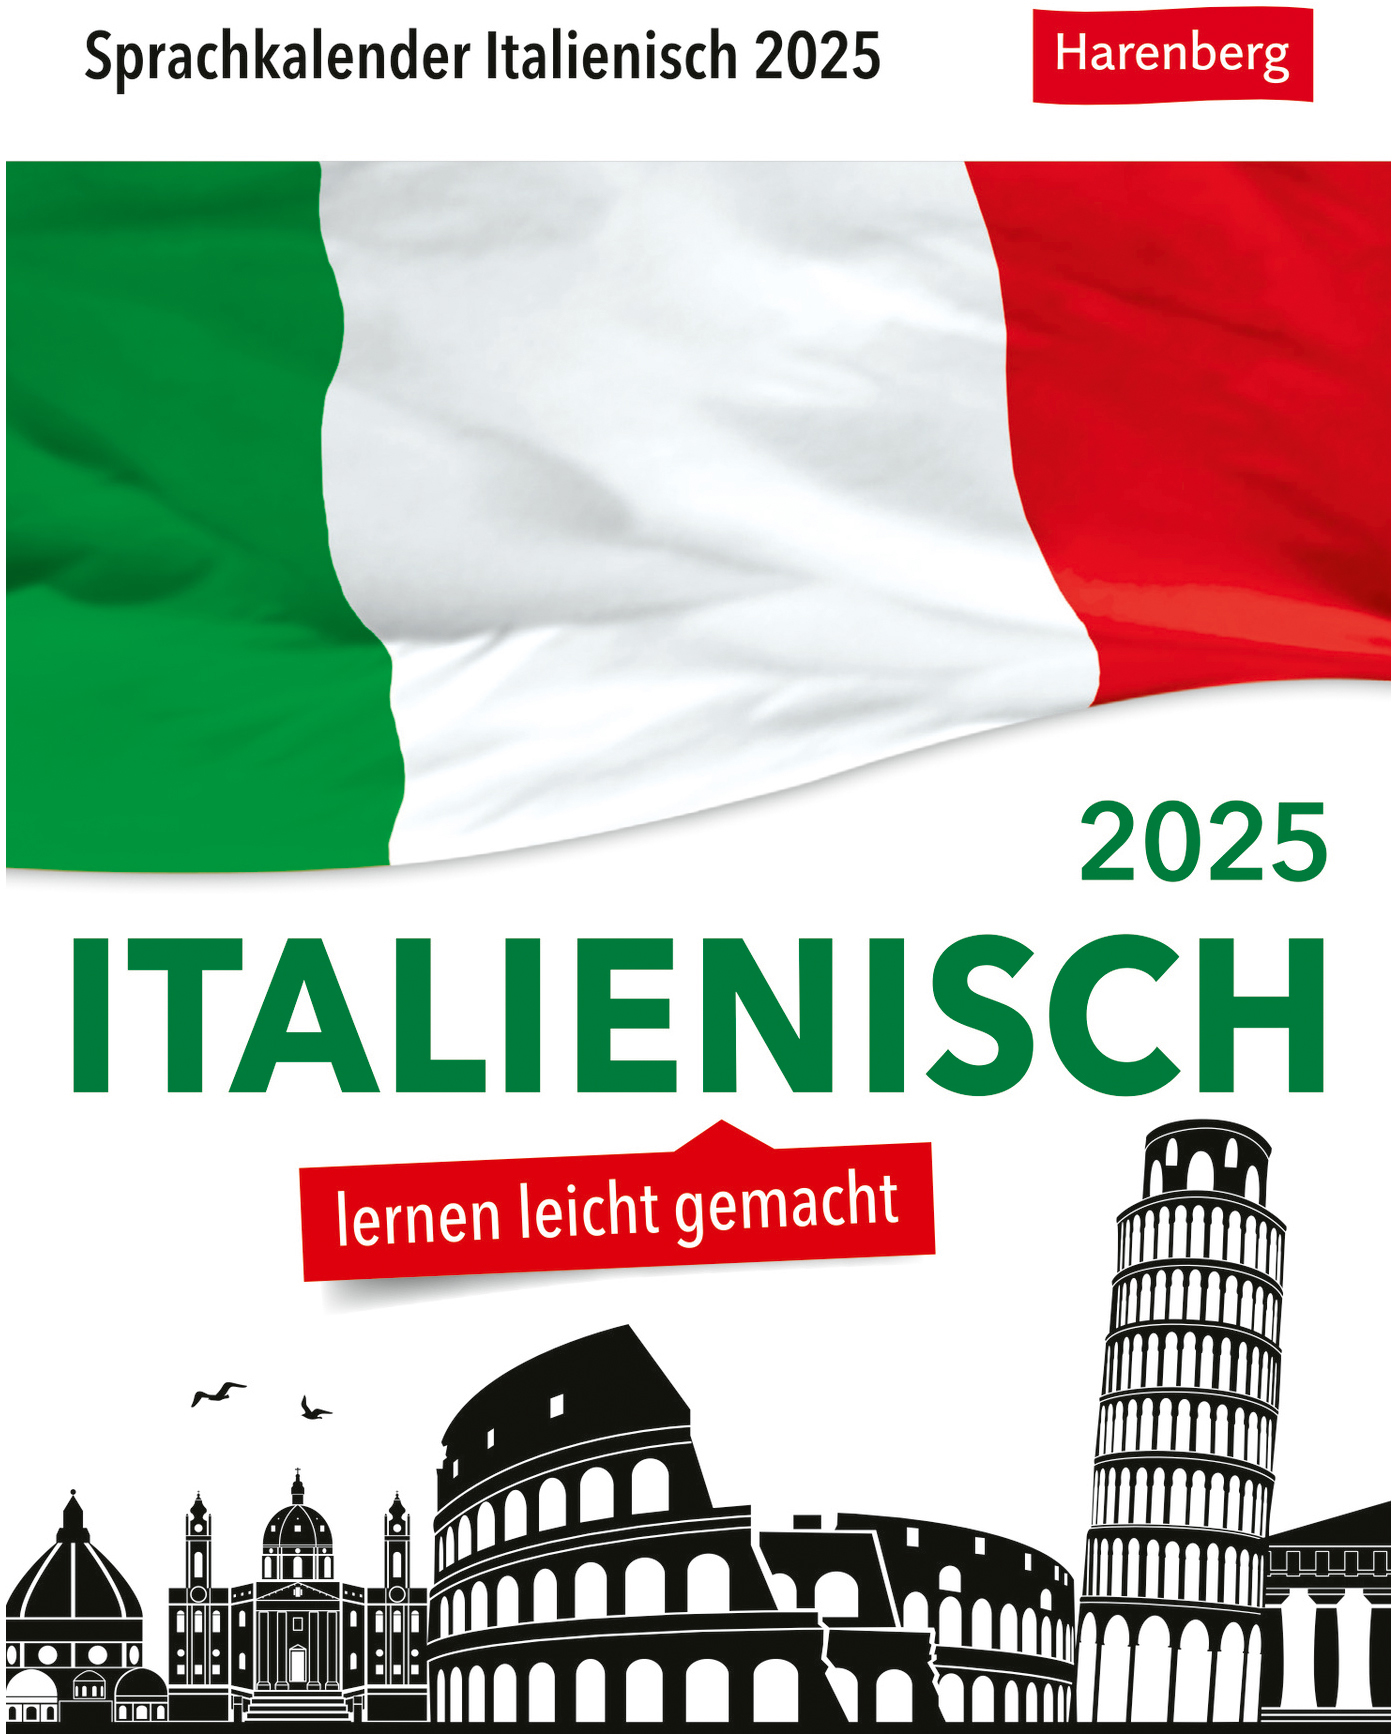 HARENBERG Calendrier détachable 2025 2111000+25 Italienisch DE, IT 12.5x16cm